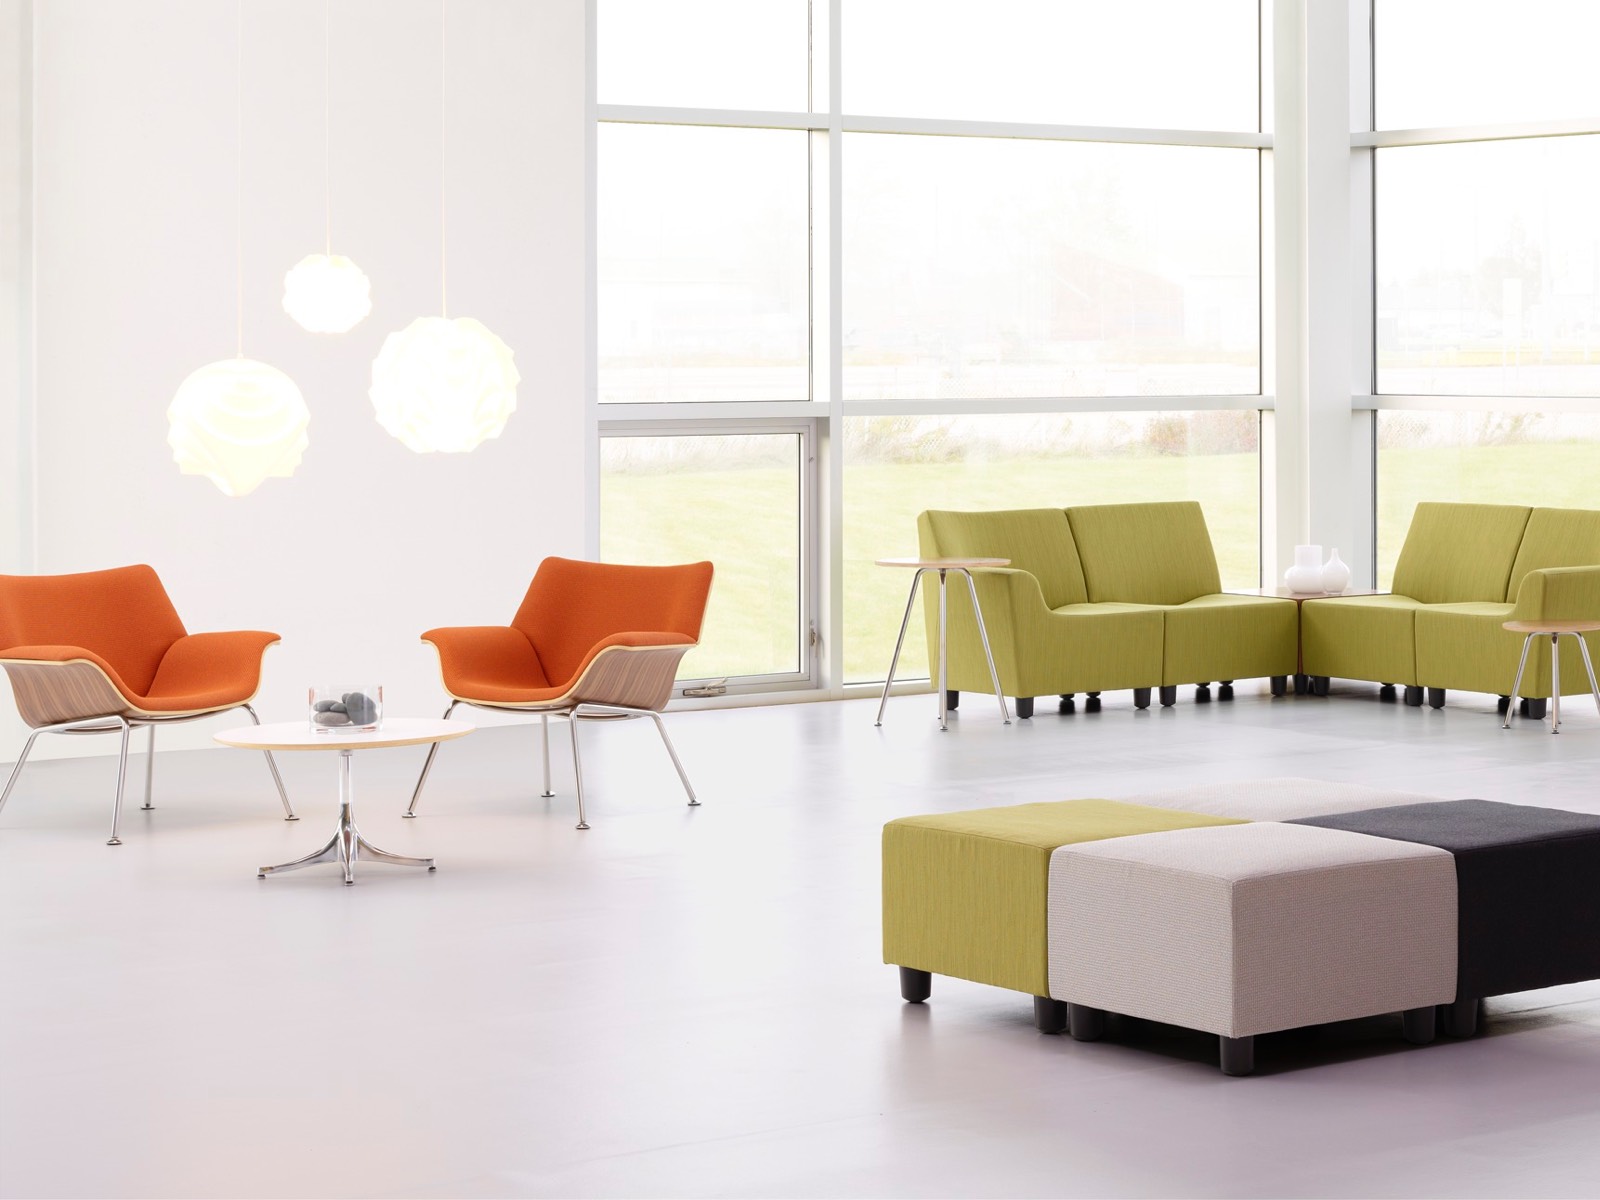 Oranje Swoop loungestoelen en groene Swoop modulaire zitplaatsen in een informele verzamelruimte.